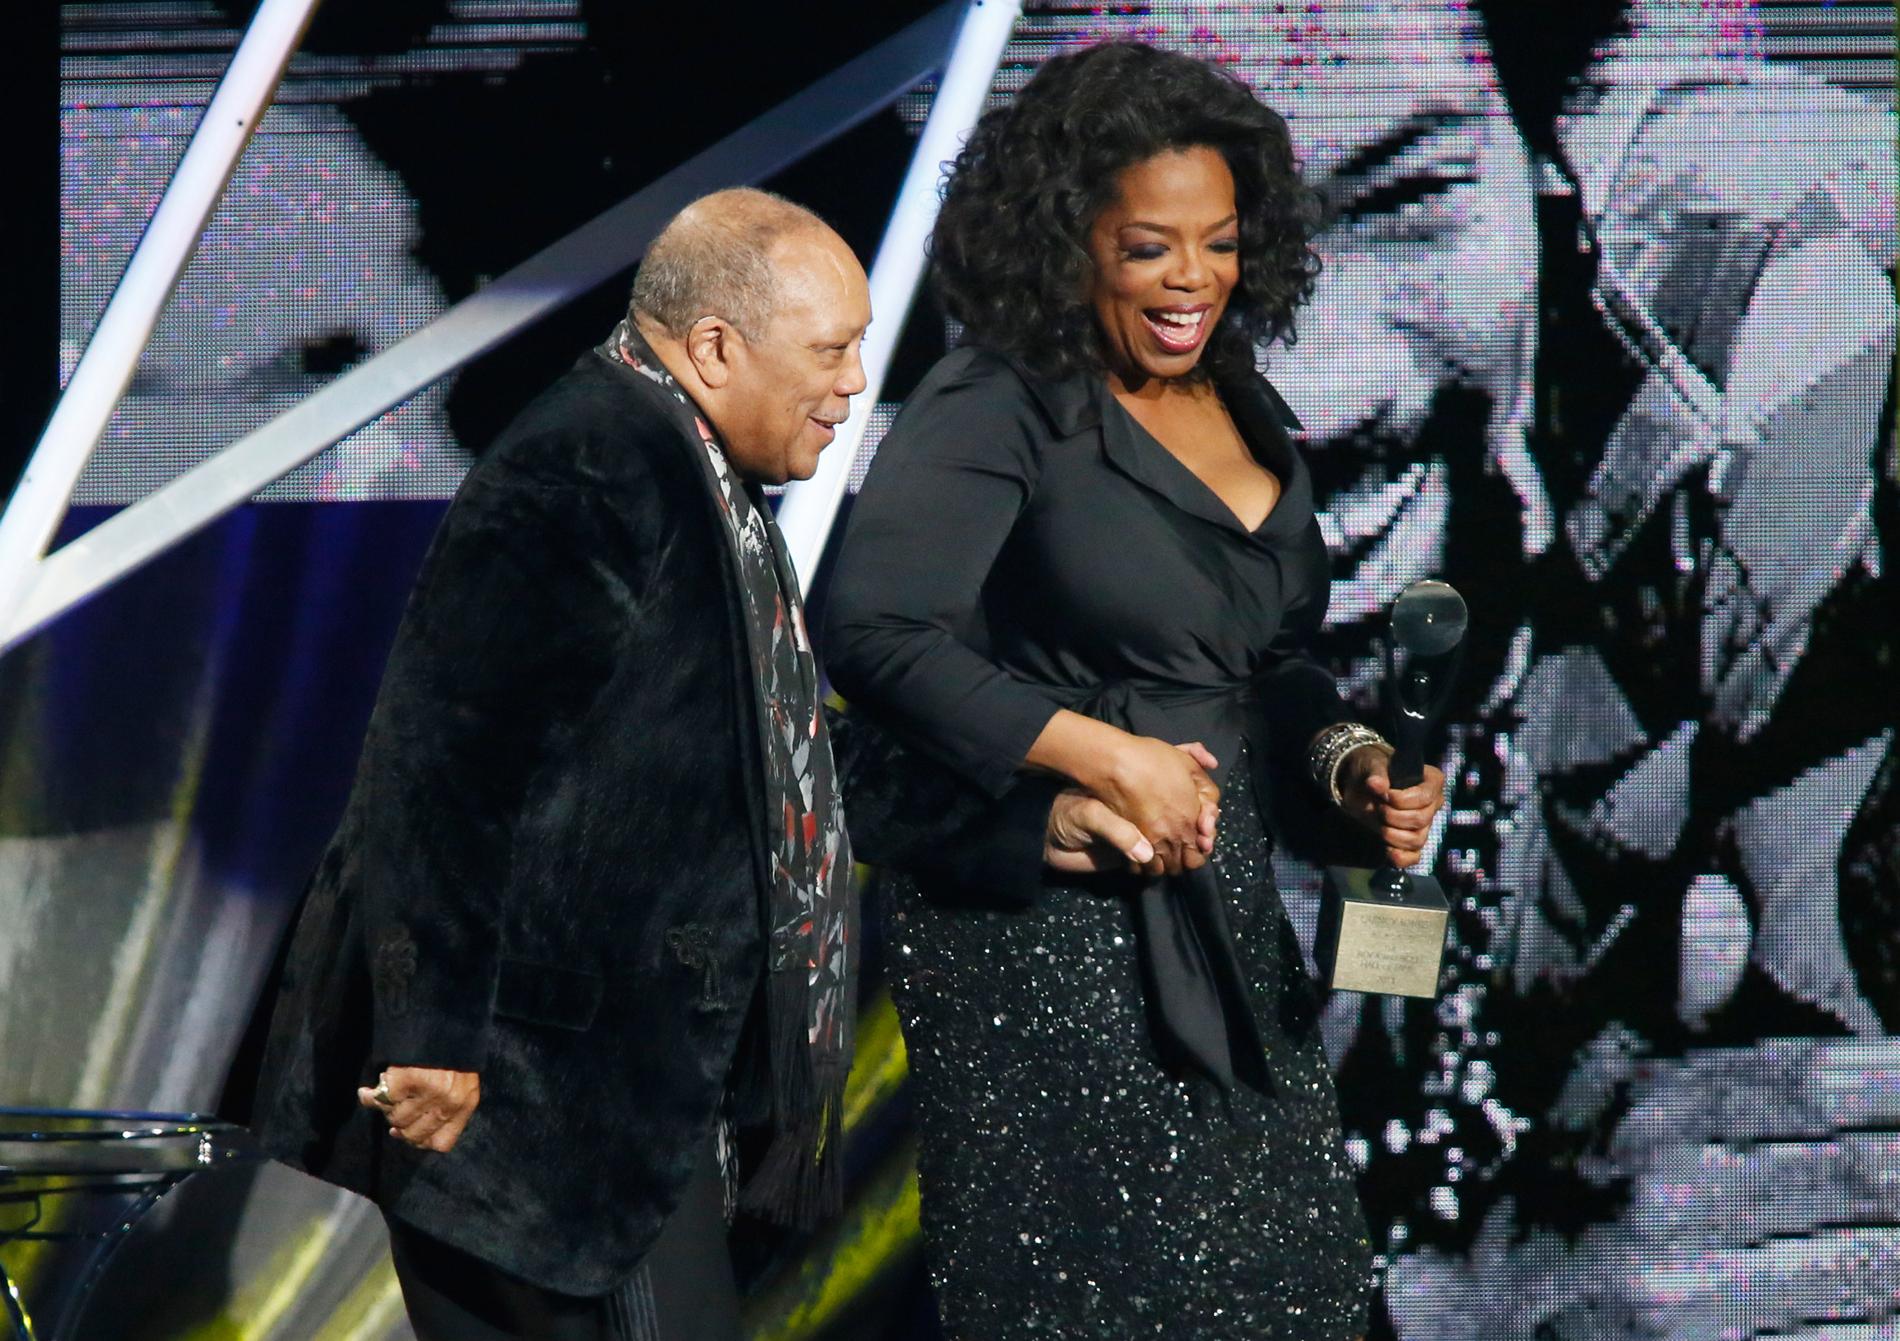 2013 förärades Quincy Jones en plats i Rock and Roll Hall of Fame, här under ceremonin med nära vännen Oprah Winfrey.